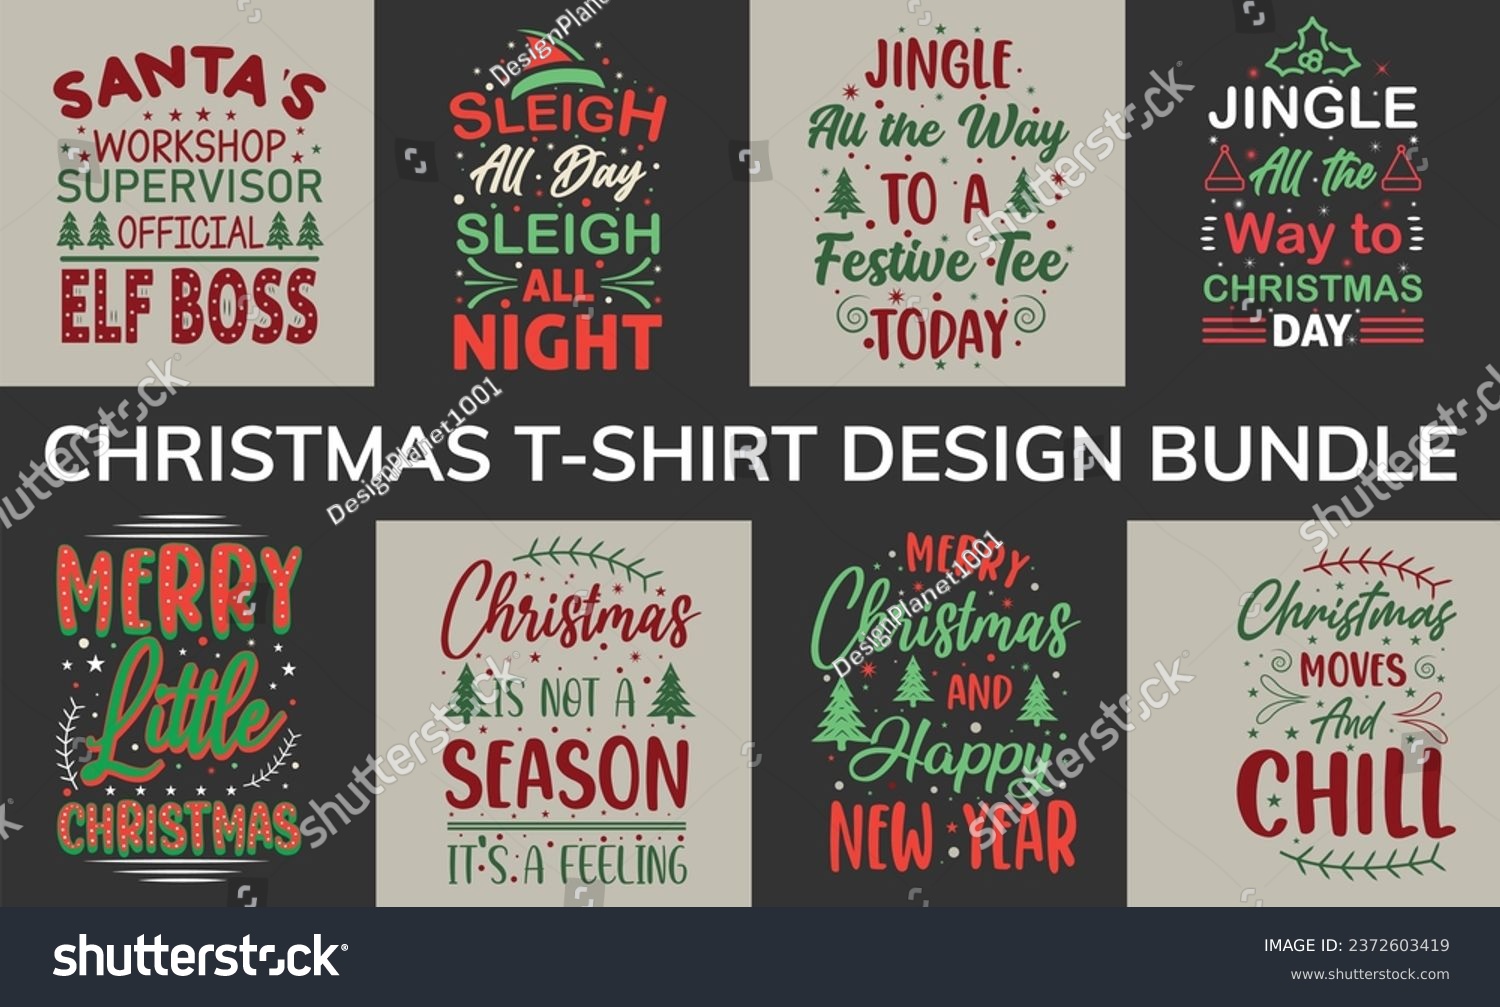 SVG of Typography Christmas T-Shirt Design Bundle, Christmas tee svg